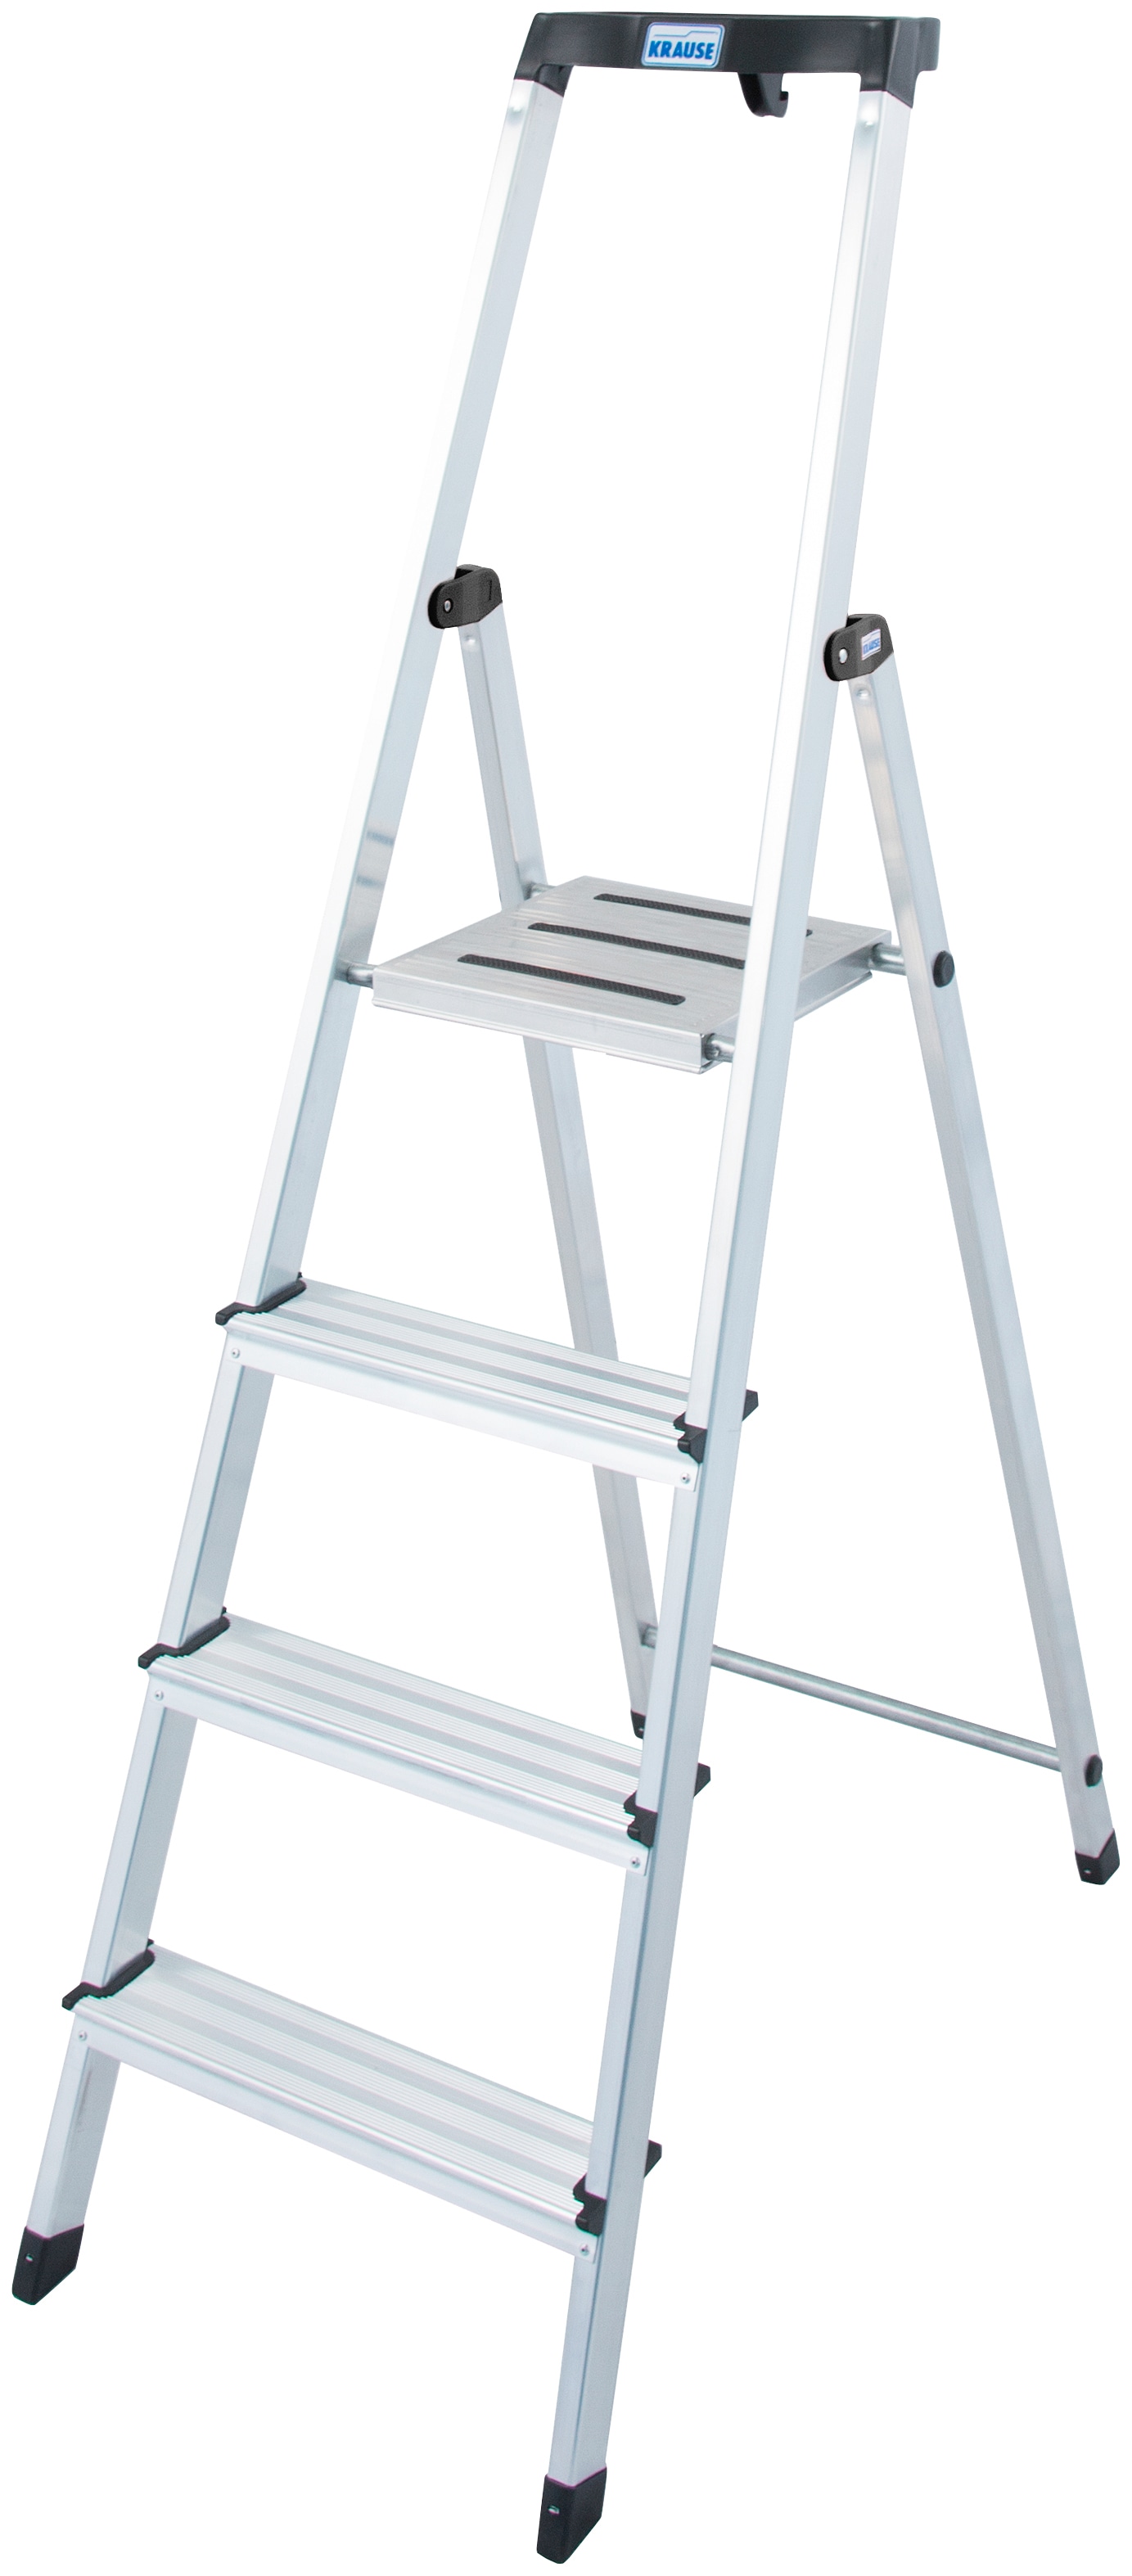 KRAUSE Stehleiter "Safety", Aluminium, 1x4 Stufen, Arbeitshöhe ca. 285 cm